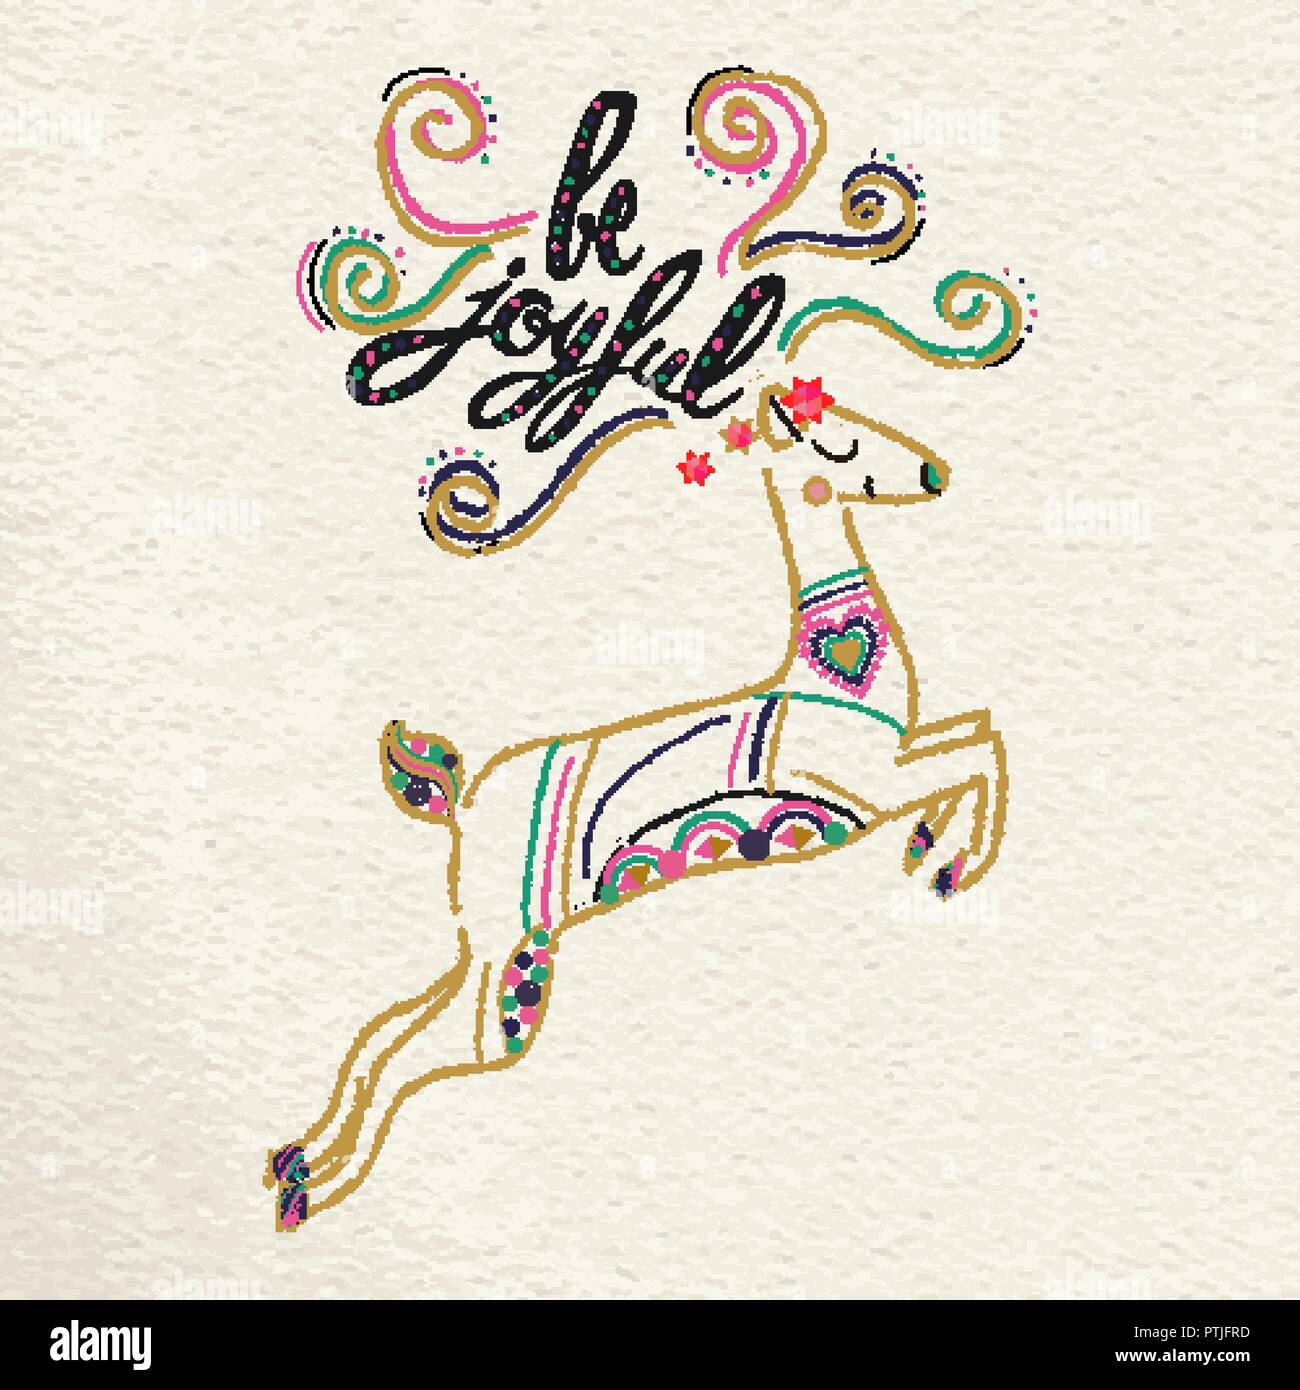 Carino il natale greeting card boho design per la stagione delle feste con disegnati a mano le renne e la tipografia. Creative calligrafia vintage illustrazione del preventivo. Illustrazione Vettoriale